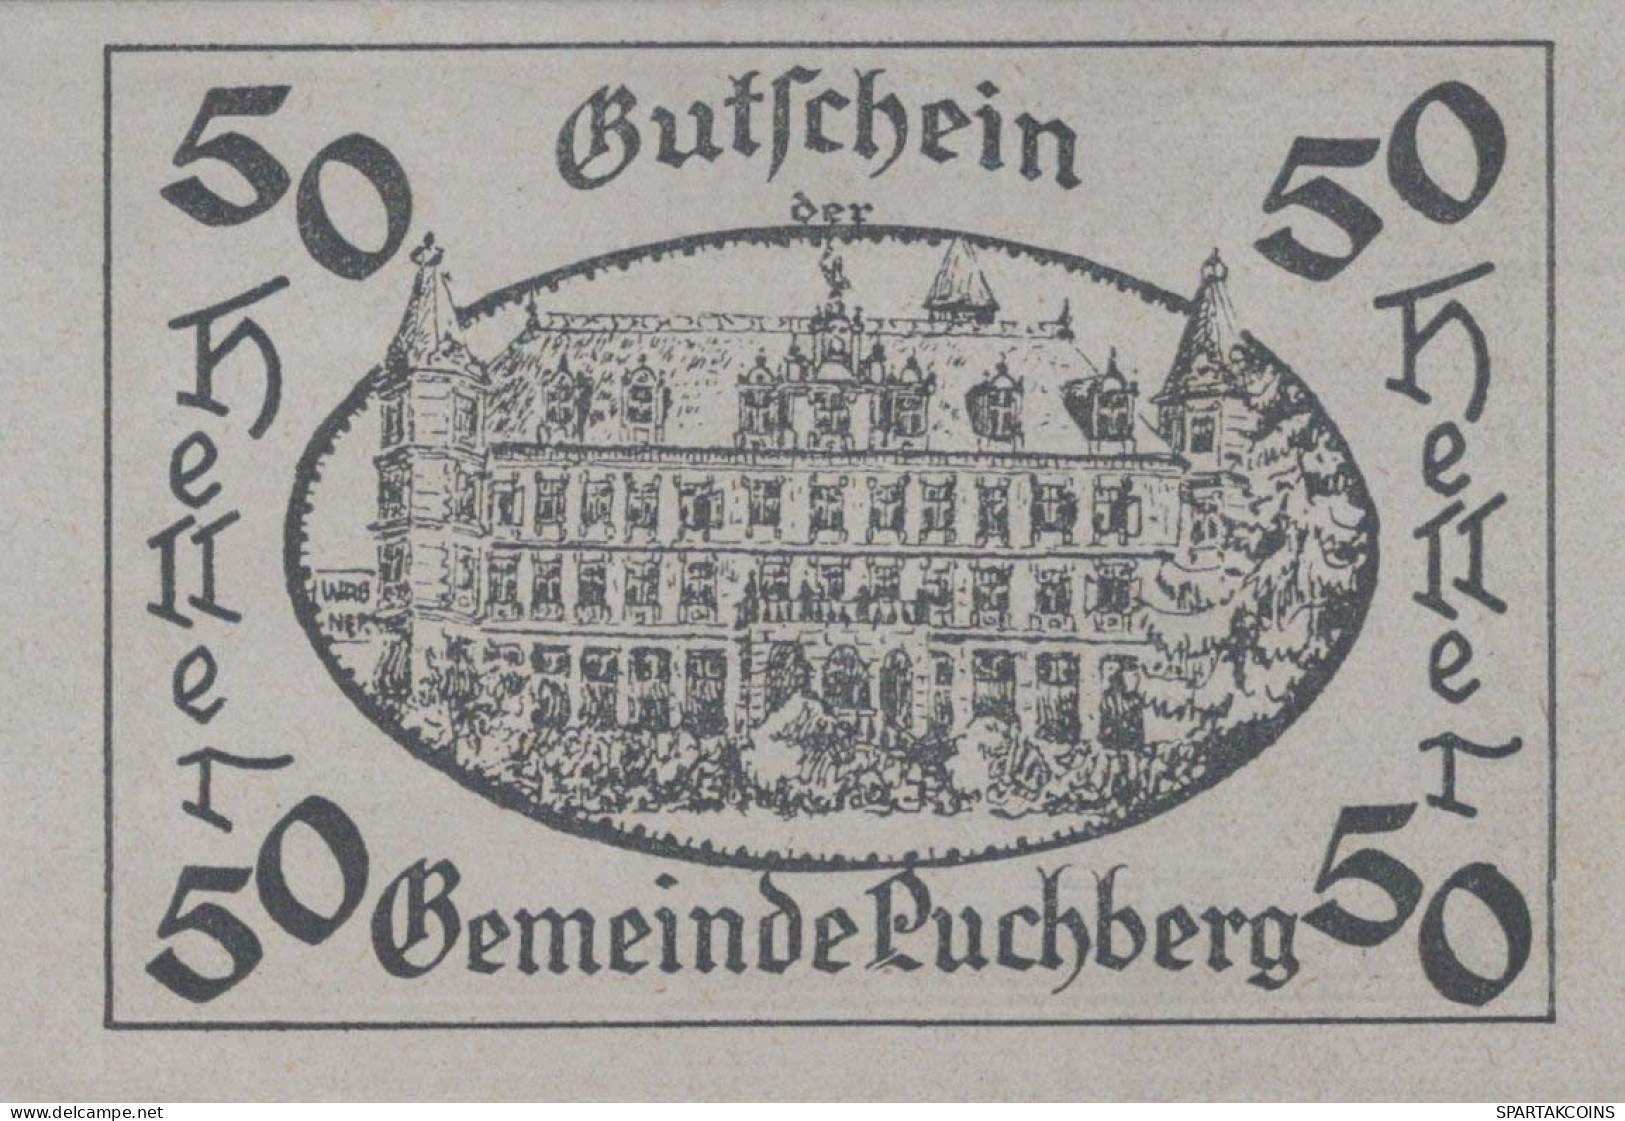 50 HELLER 1920 Stadt PUCHBERG BEI WELS Oberösterreich Österreich Notgeld Papiergeld Banknote #PG981 - [11] Local Banknote Issues